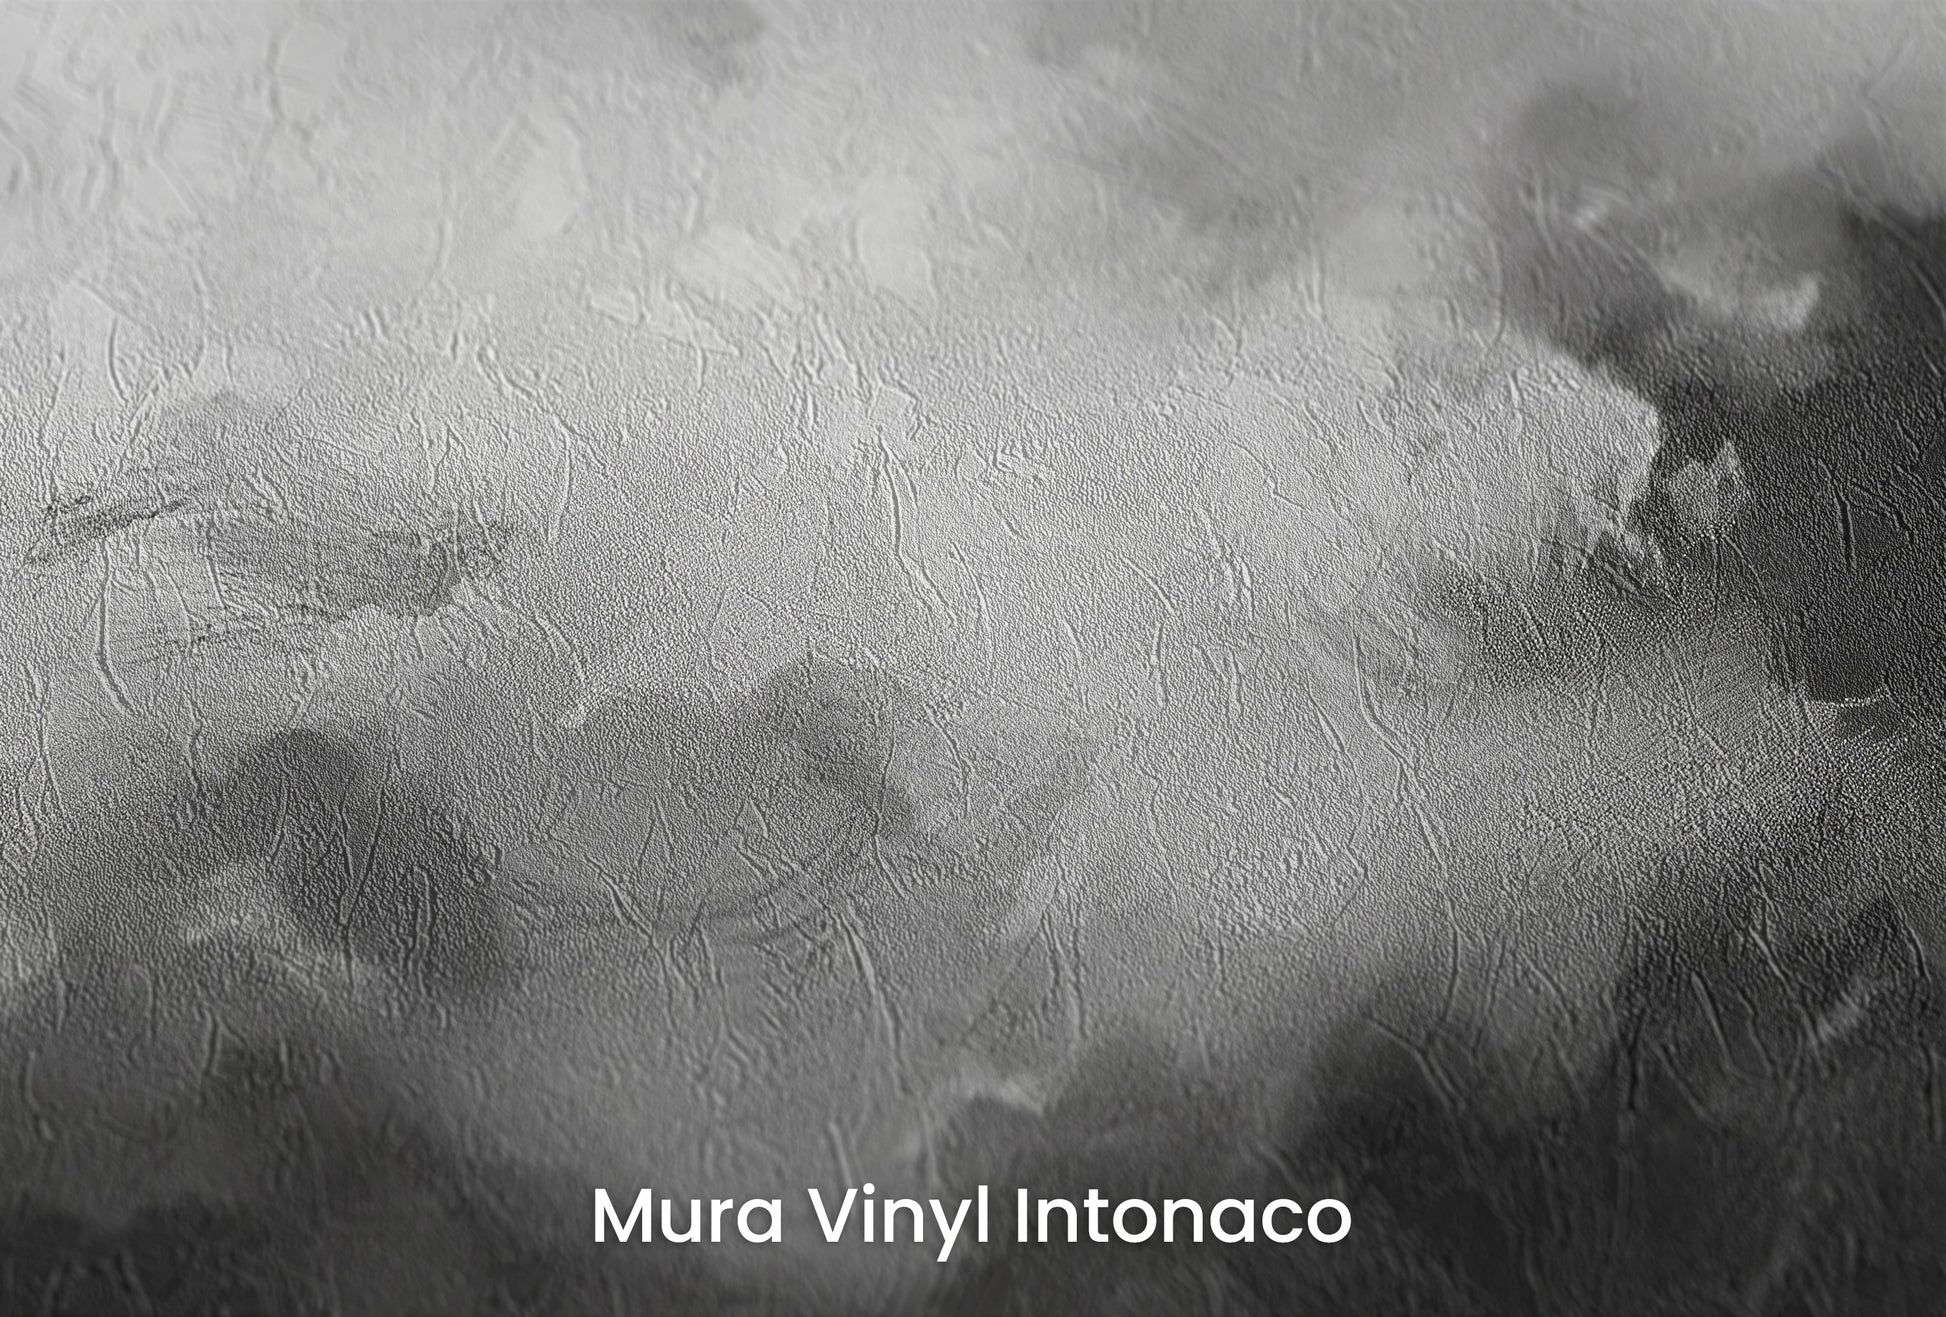 Zbliżenie na artystyczną fototapetę o nazwie Storm's Palette na podłożu Mura Vinyl Intonaco - struktura tartego tynku.